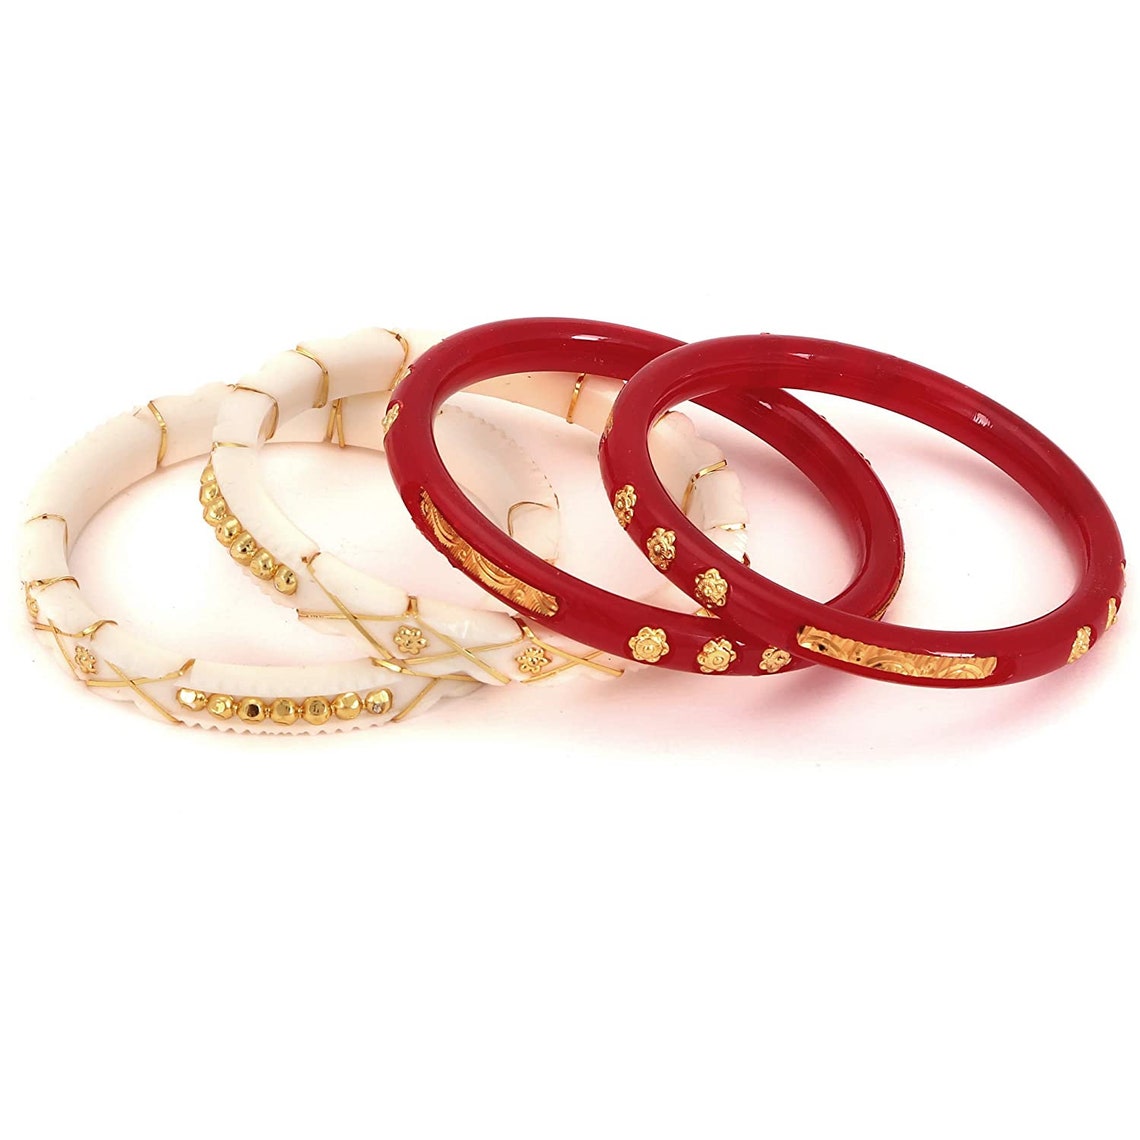 Designer Shaka Pola Bangles/red White Combination/bangle for Women